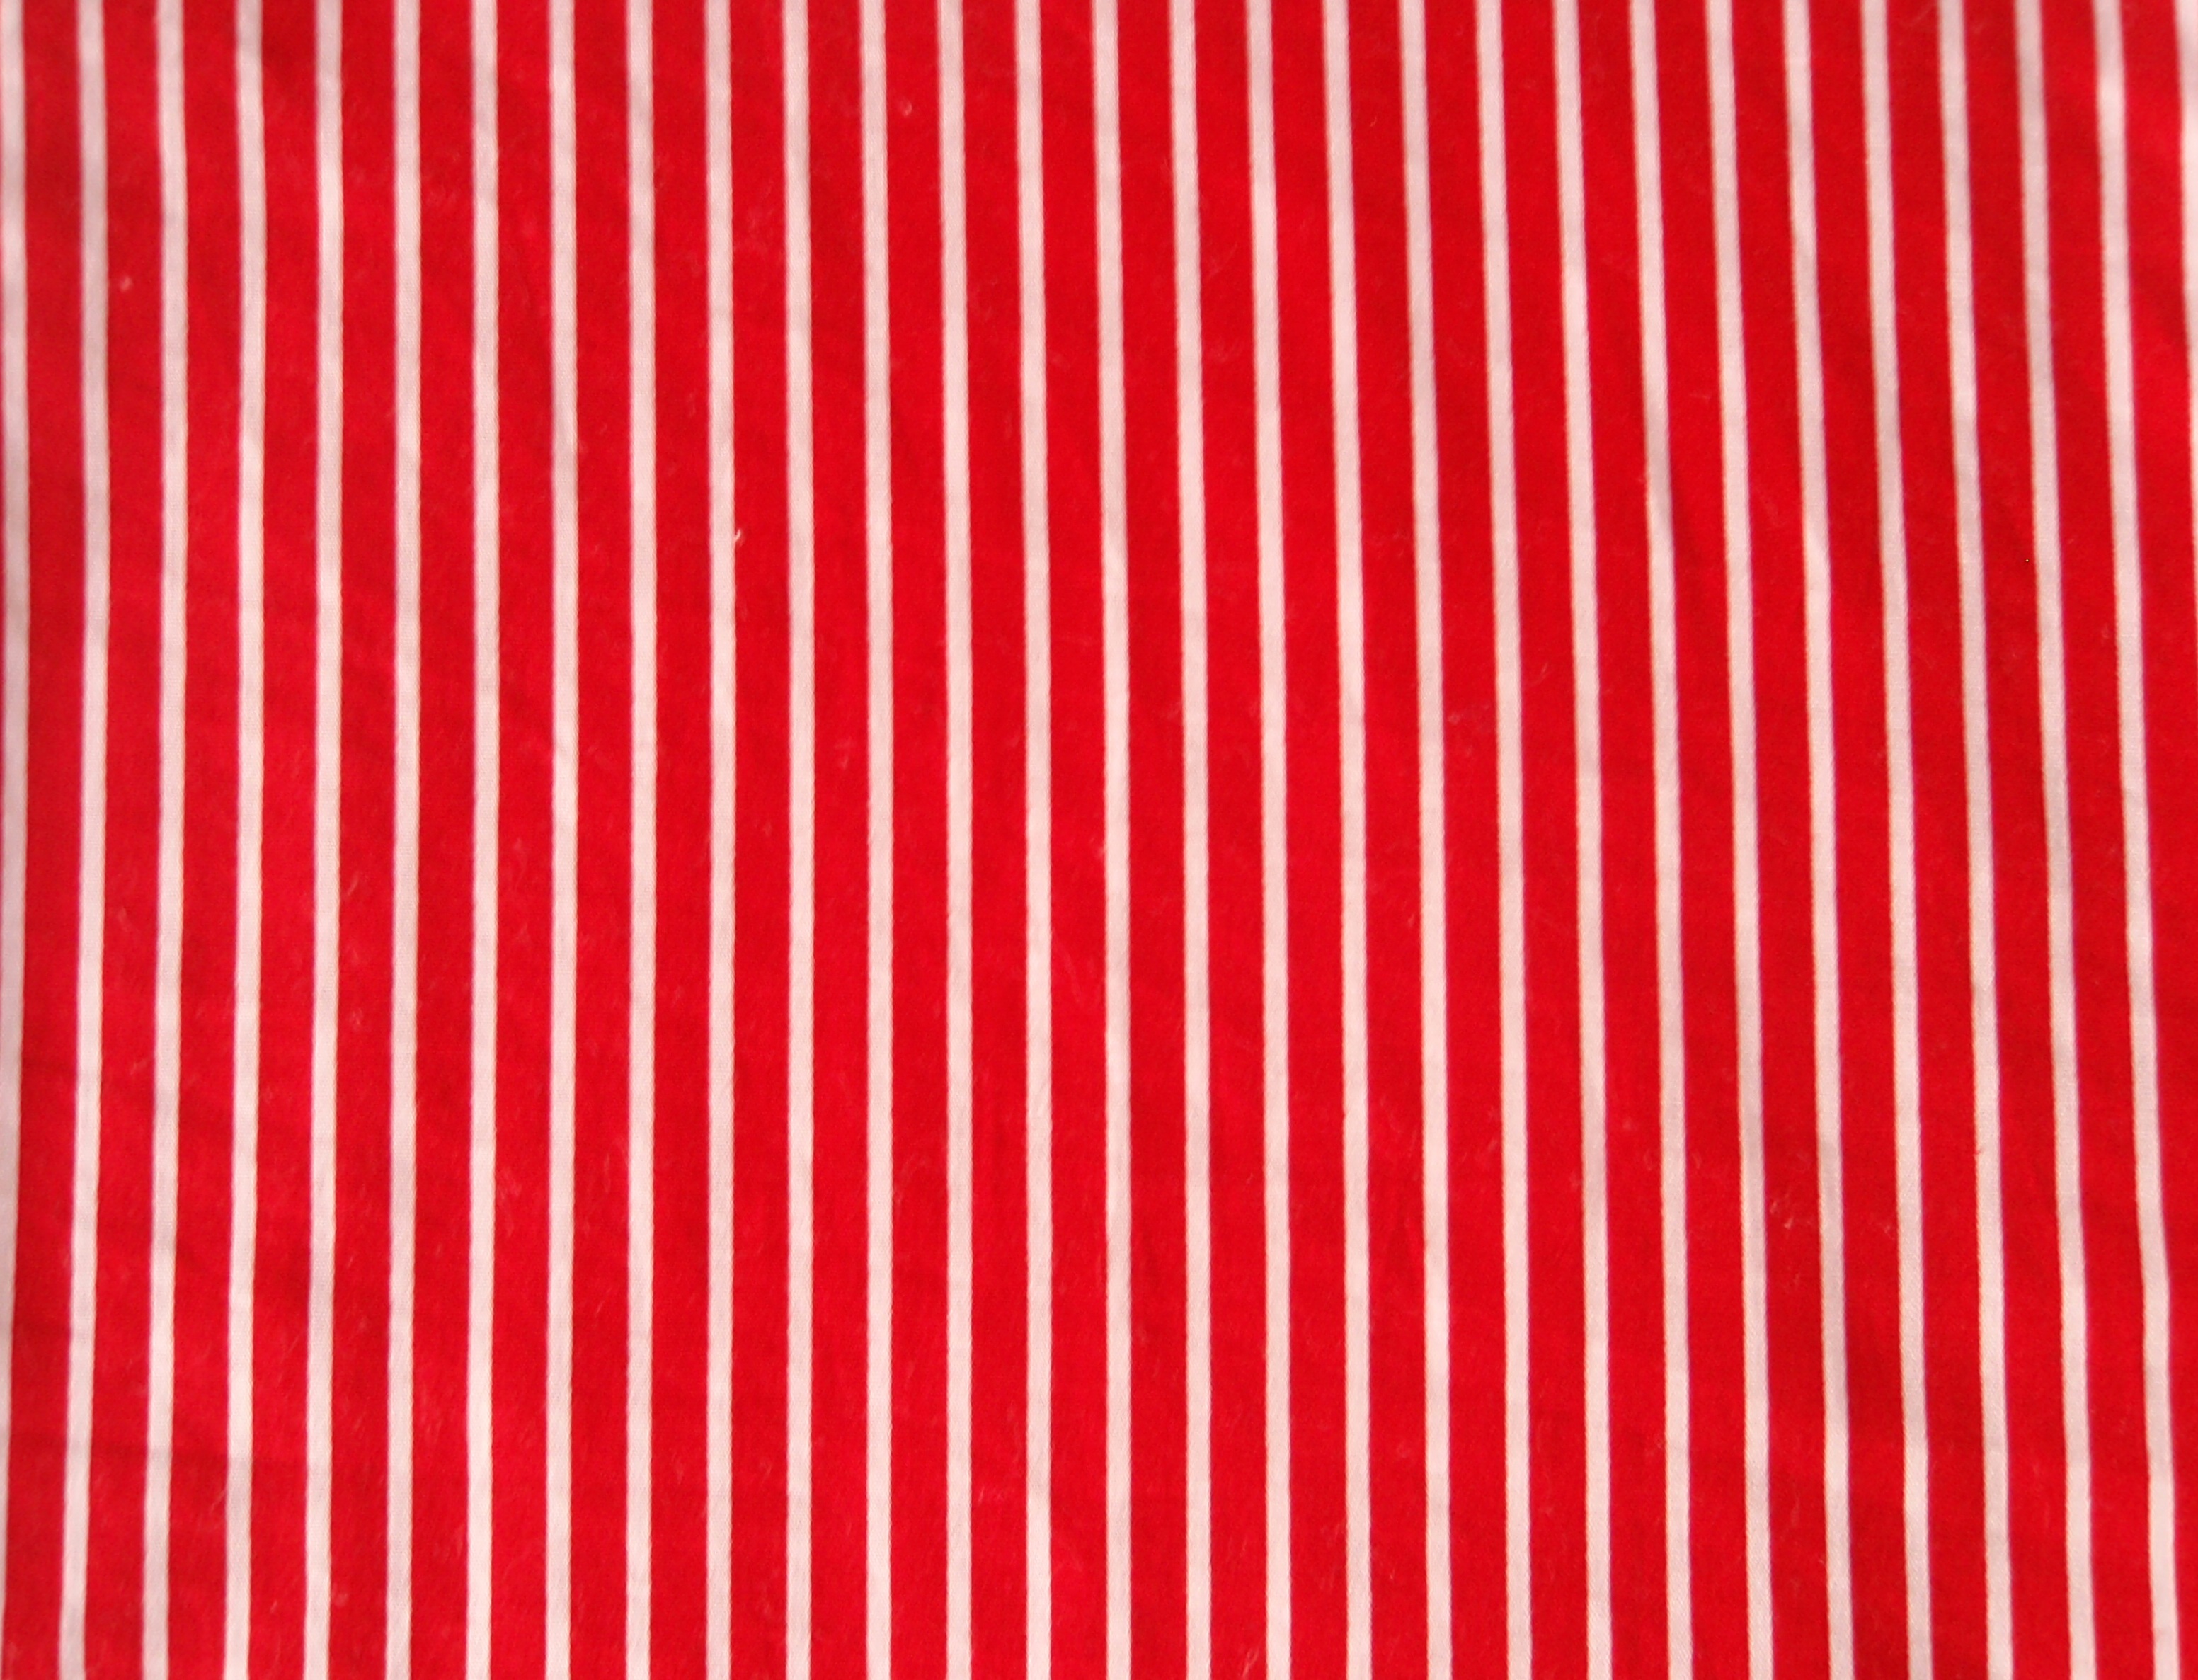 Red and white. Ред Страйпс. Текстура Red White Stripes. Striped (Red, White & Black) винил. Фон Вайт Страйпс.